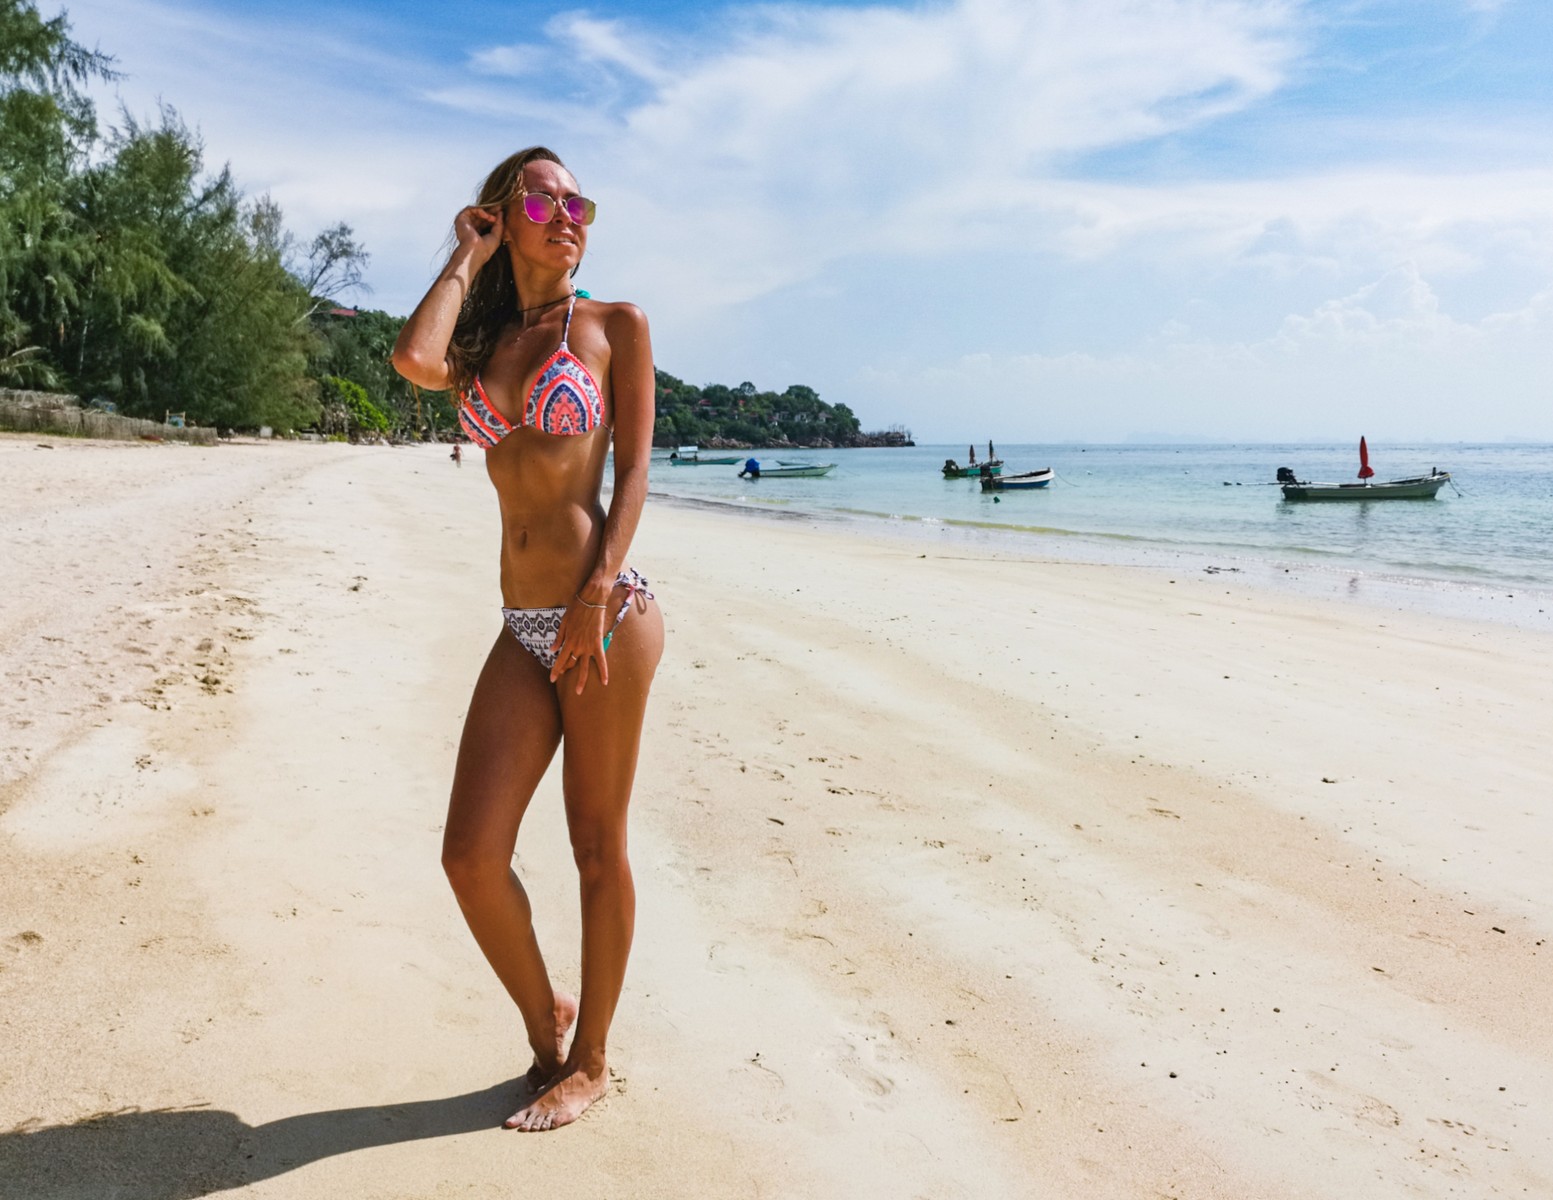 Сегодня о себе и своем увлечении спортом рассказала travel-блогер Юлия Шмелёва - первая претендентка на статус самой стройной и накаченной “Девушки сентября”